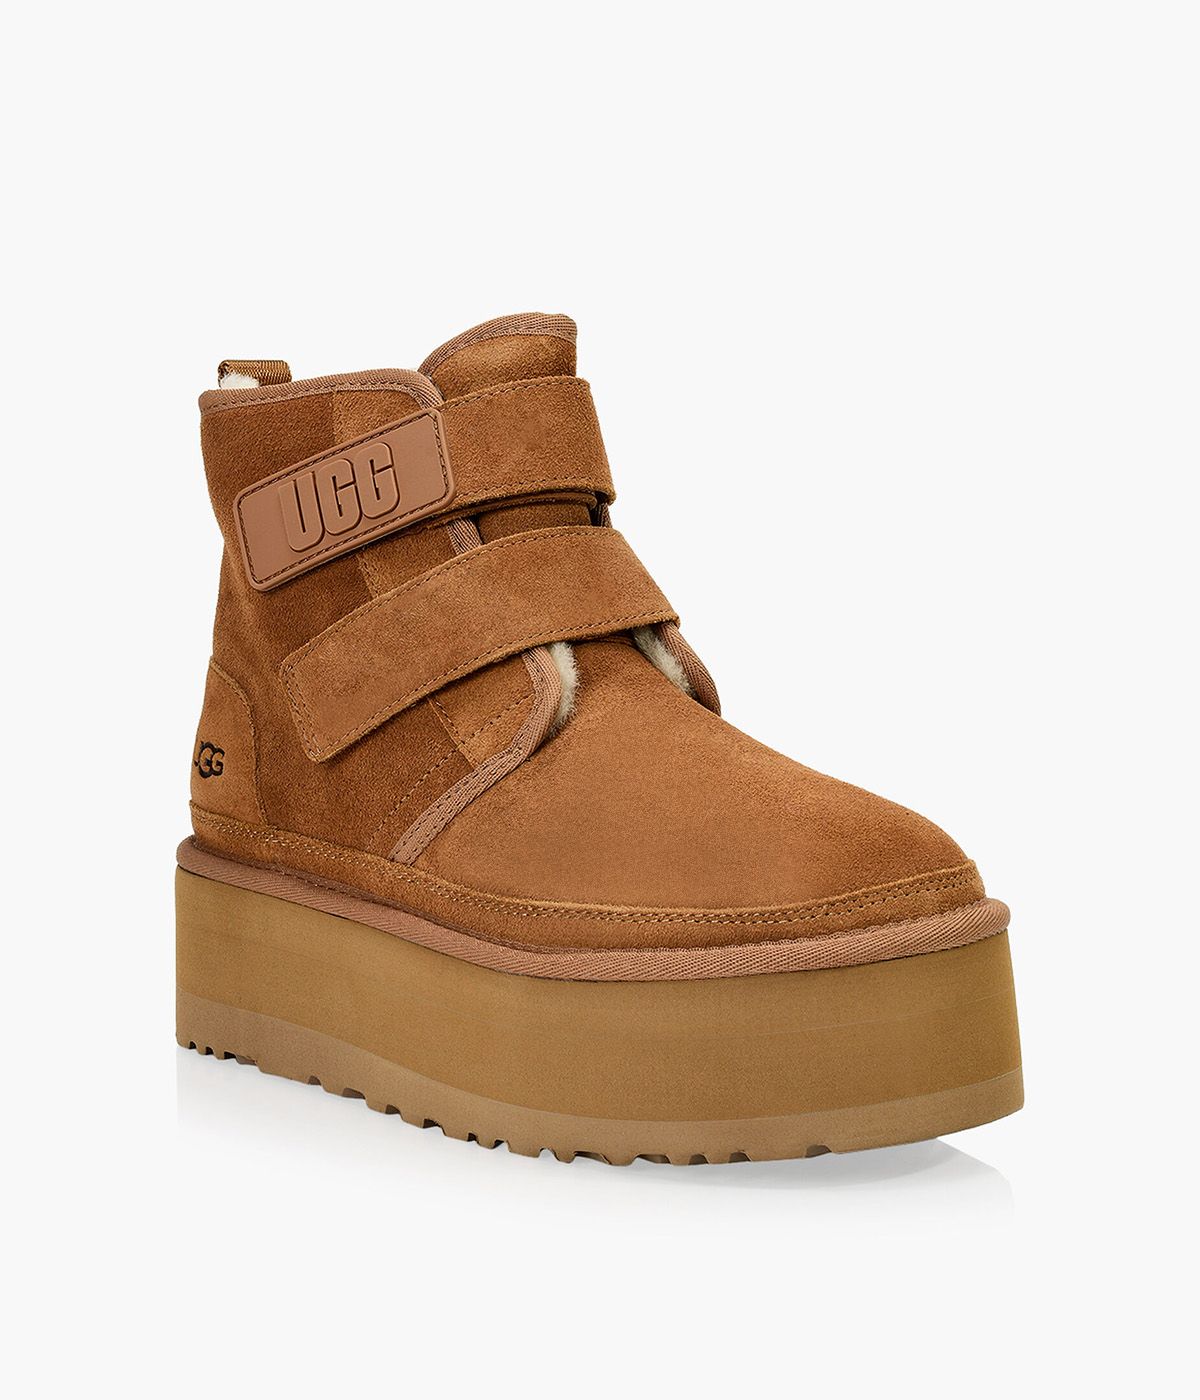 UGG NEUMEL PLATFORM - Leather | Browns Shoes